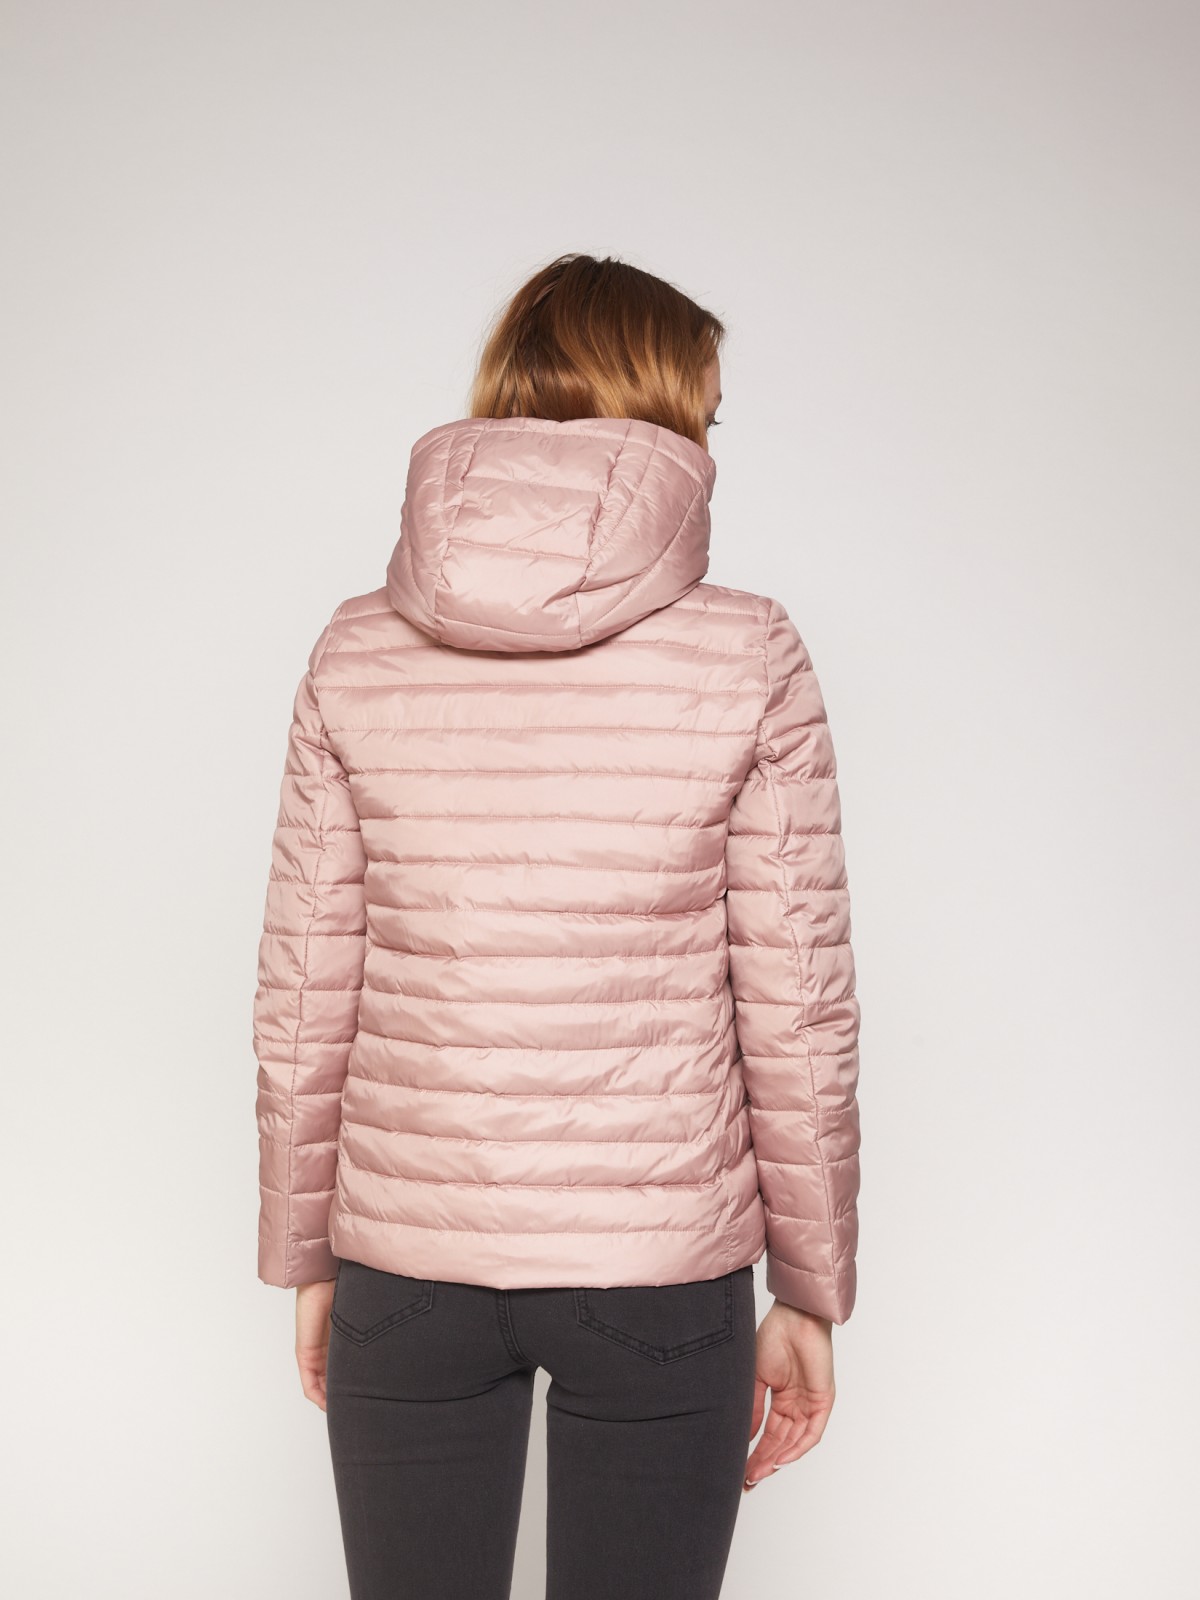 Лёгкая куртка с капюшоном zolla 021335112024, цвет розовый, размер XS - фото 6